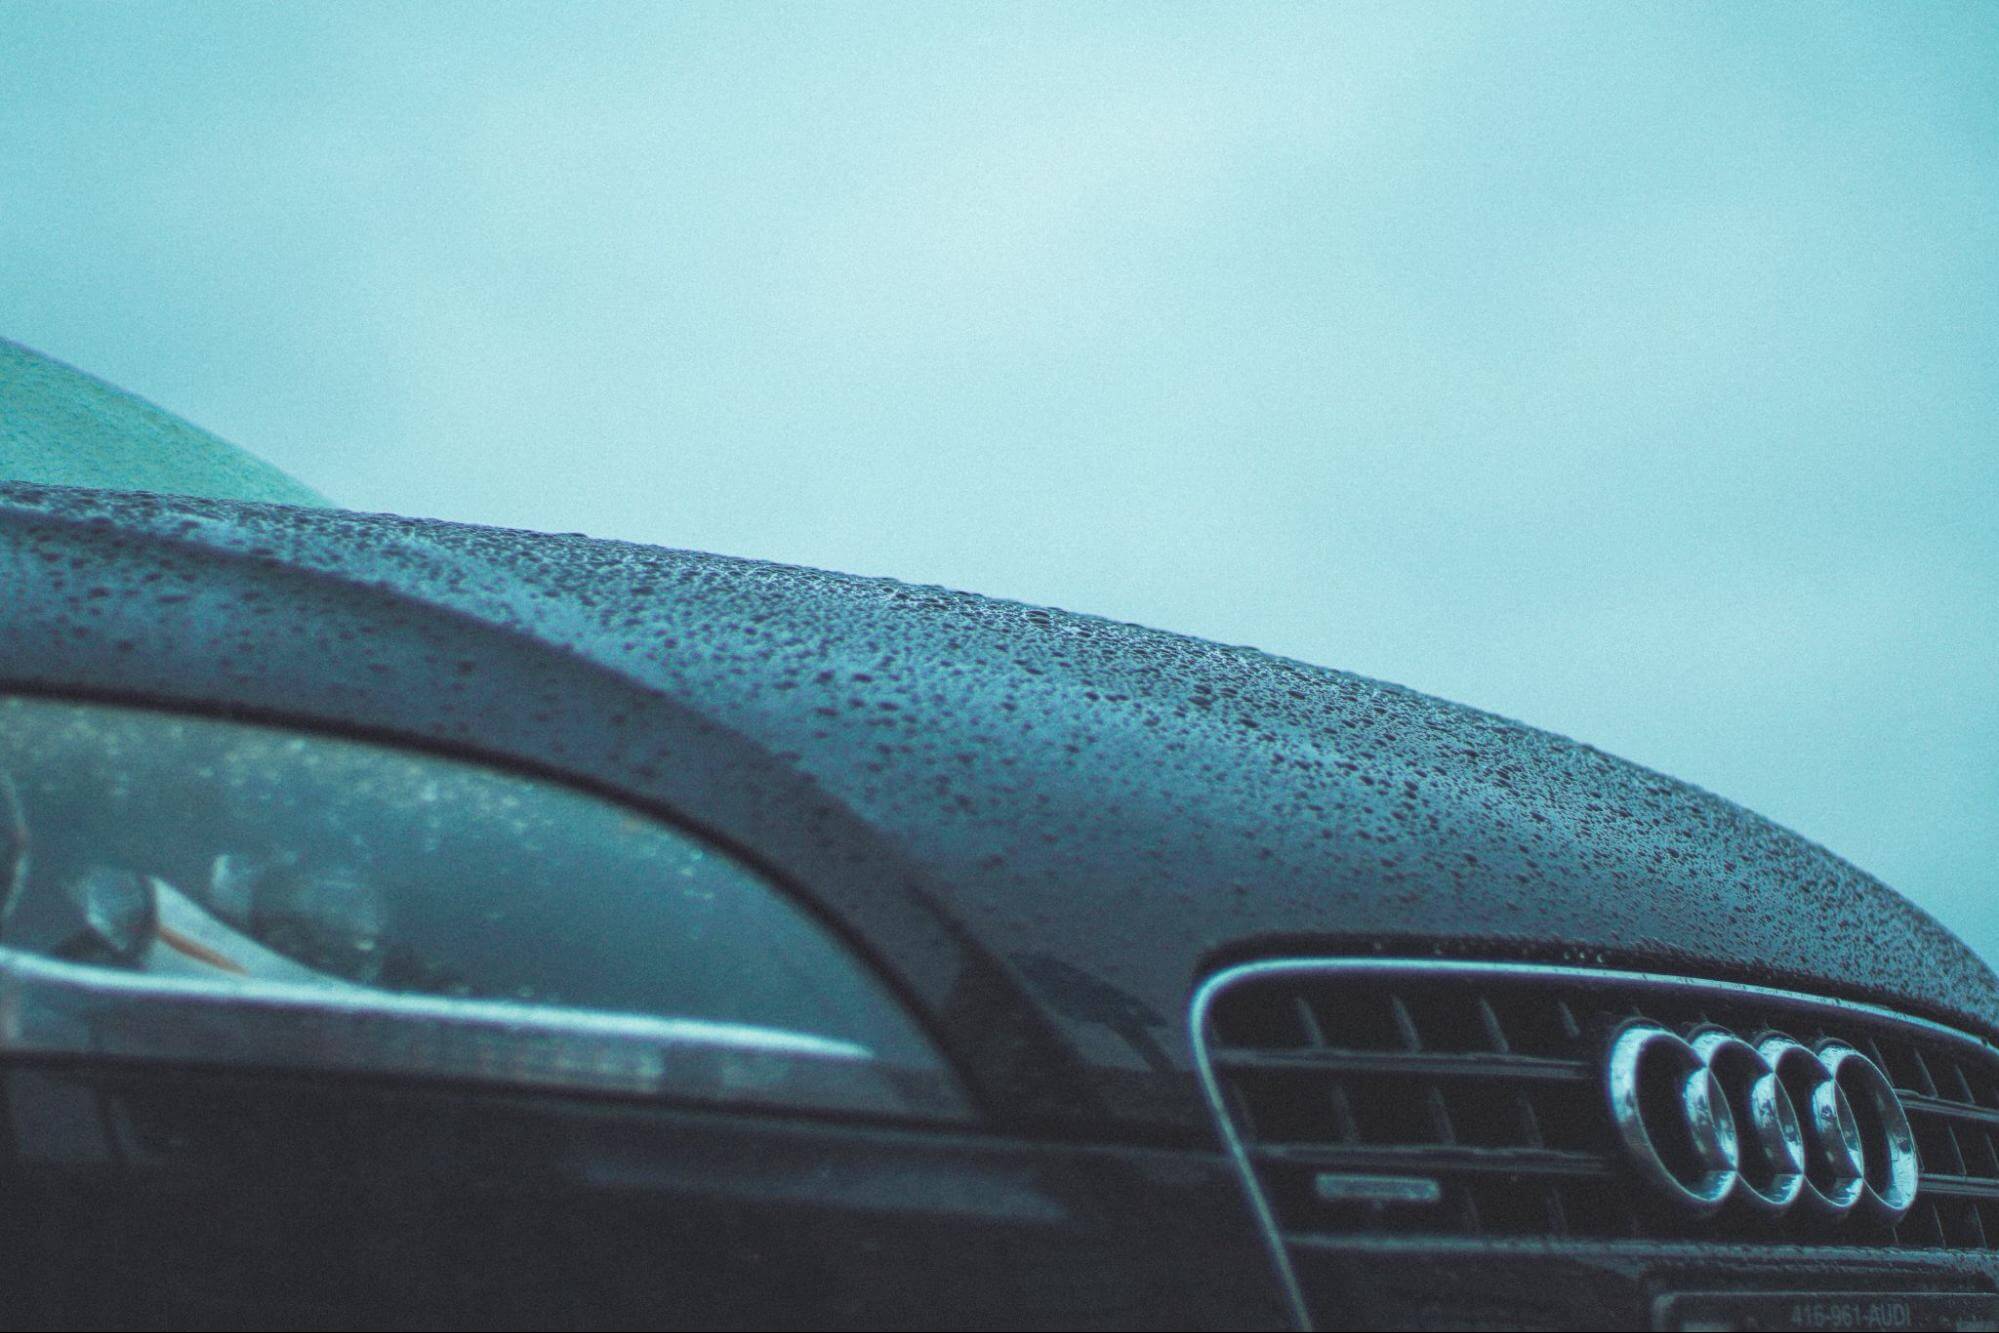 um carro Audi está em um ambiente com neblina e seus faróis estão queimados